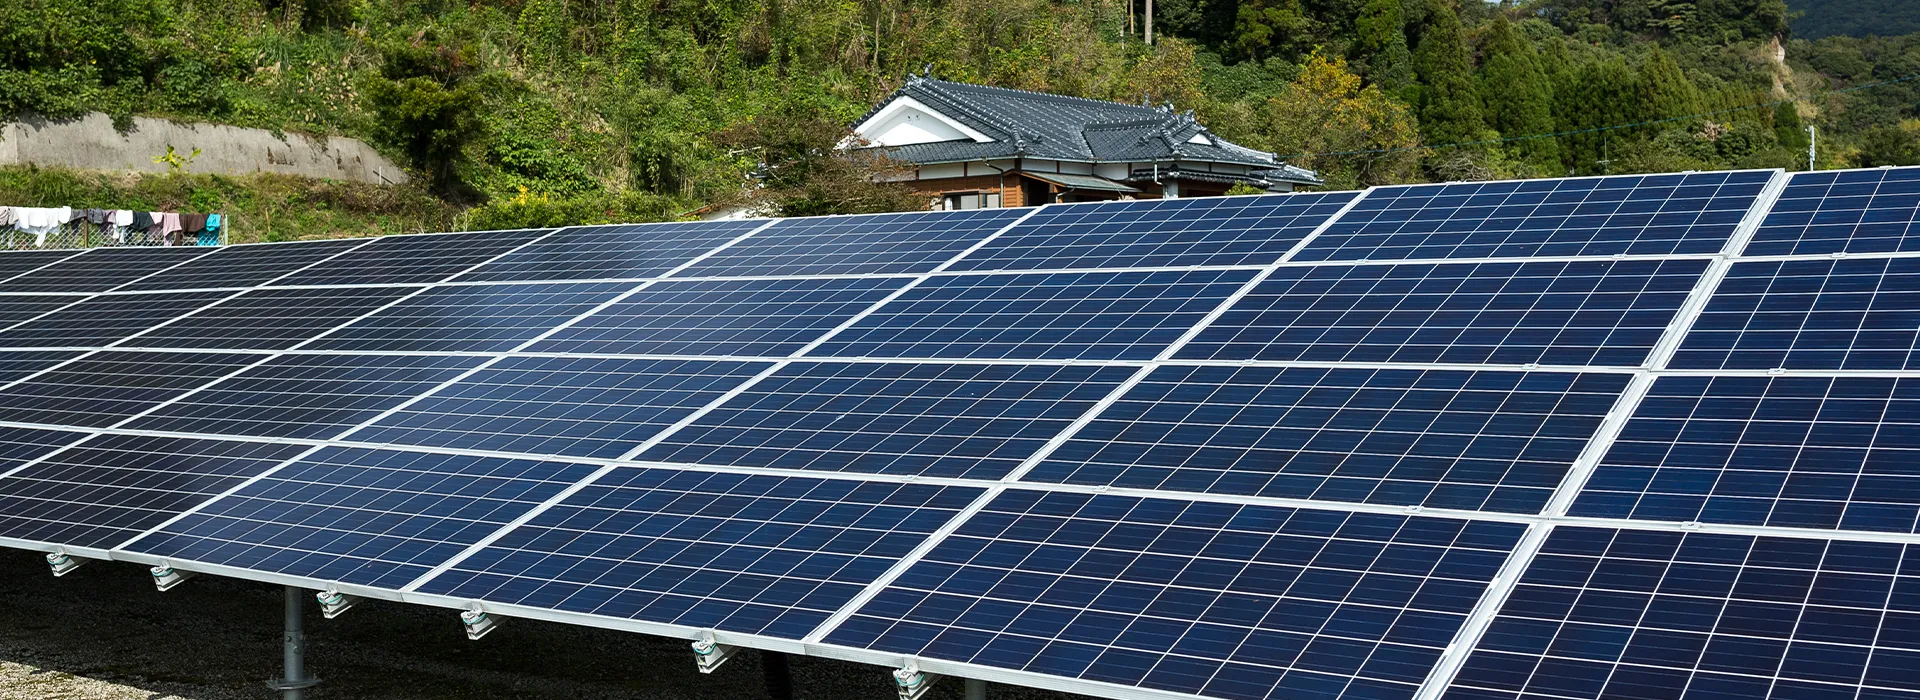 Panneaux solaires photovoltaïques et rentabilité